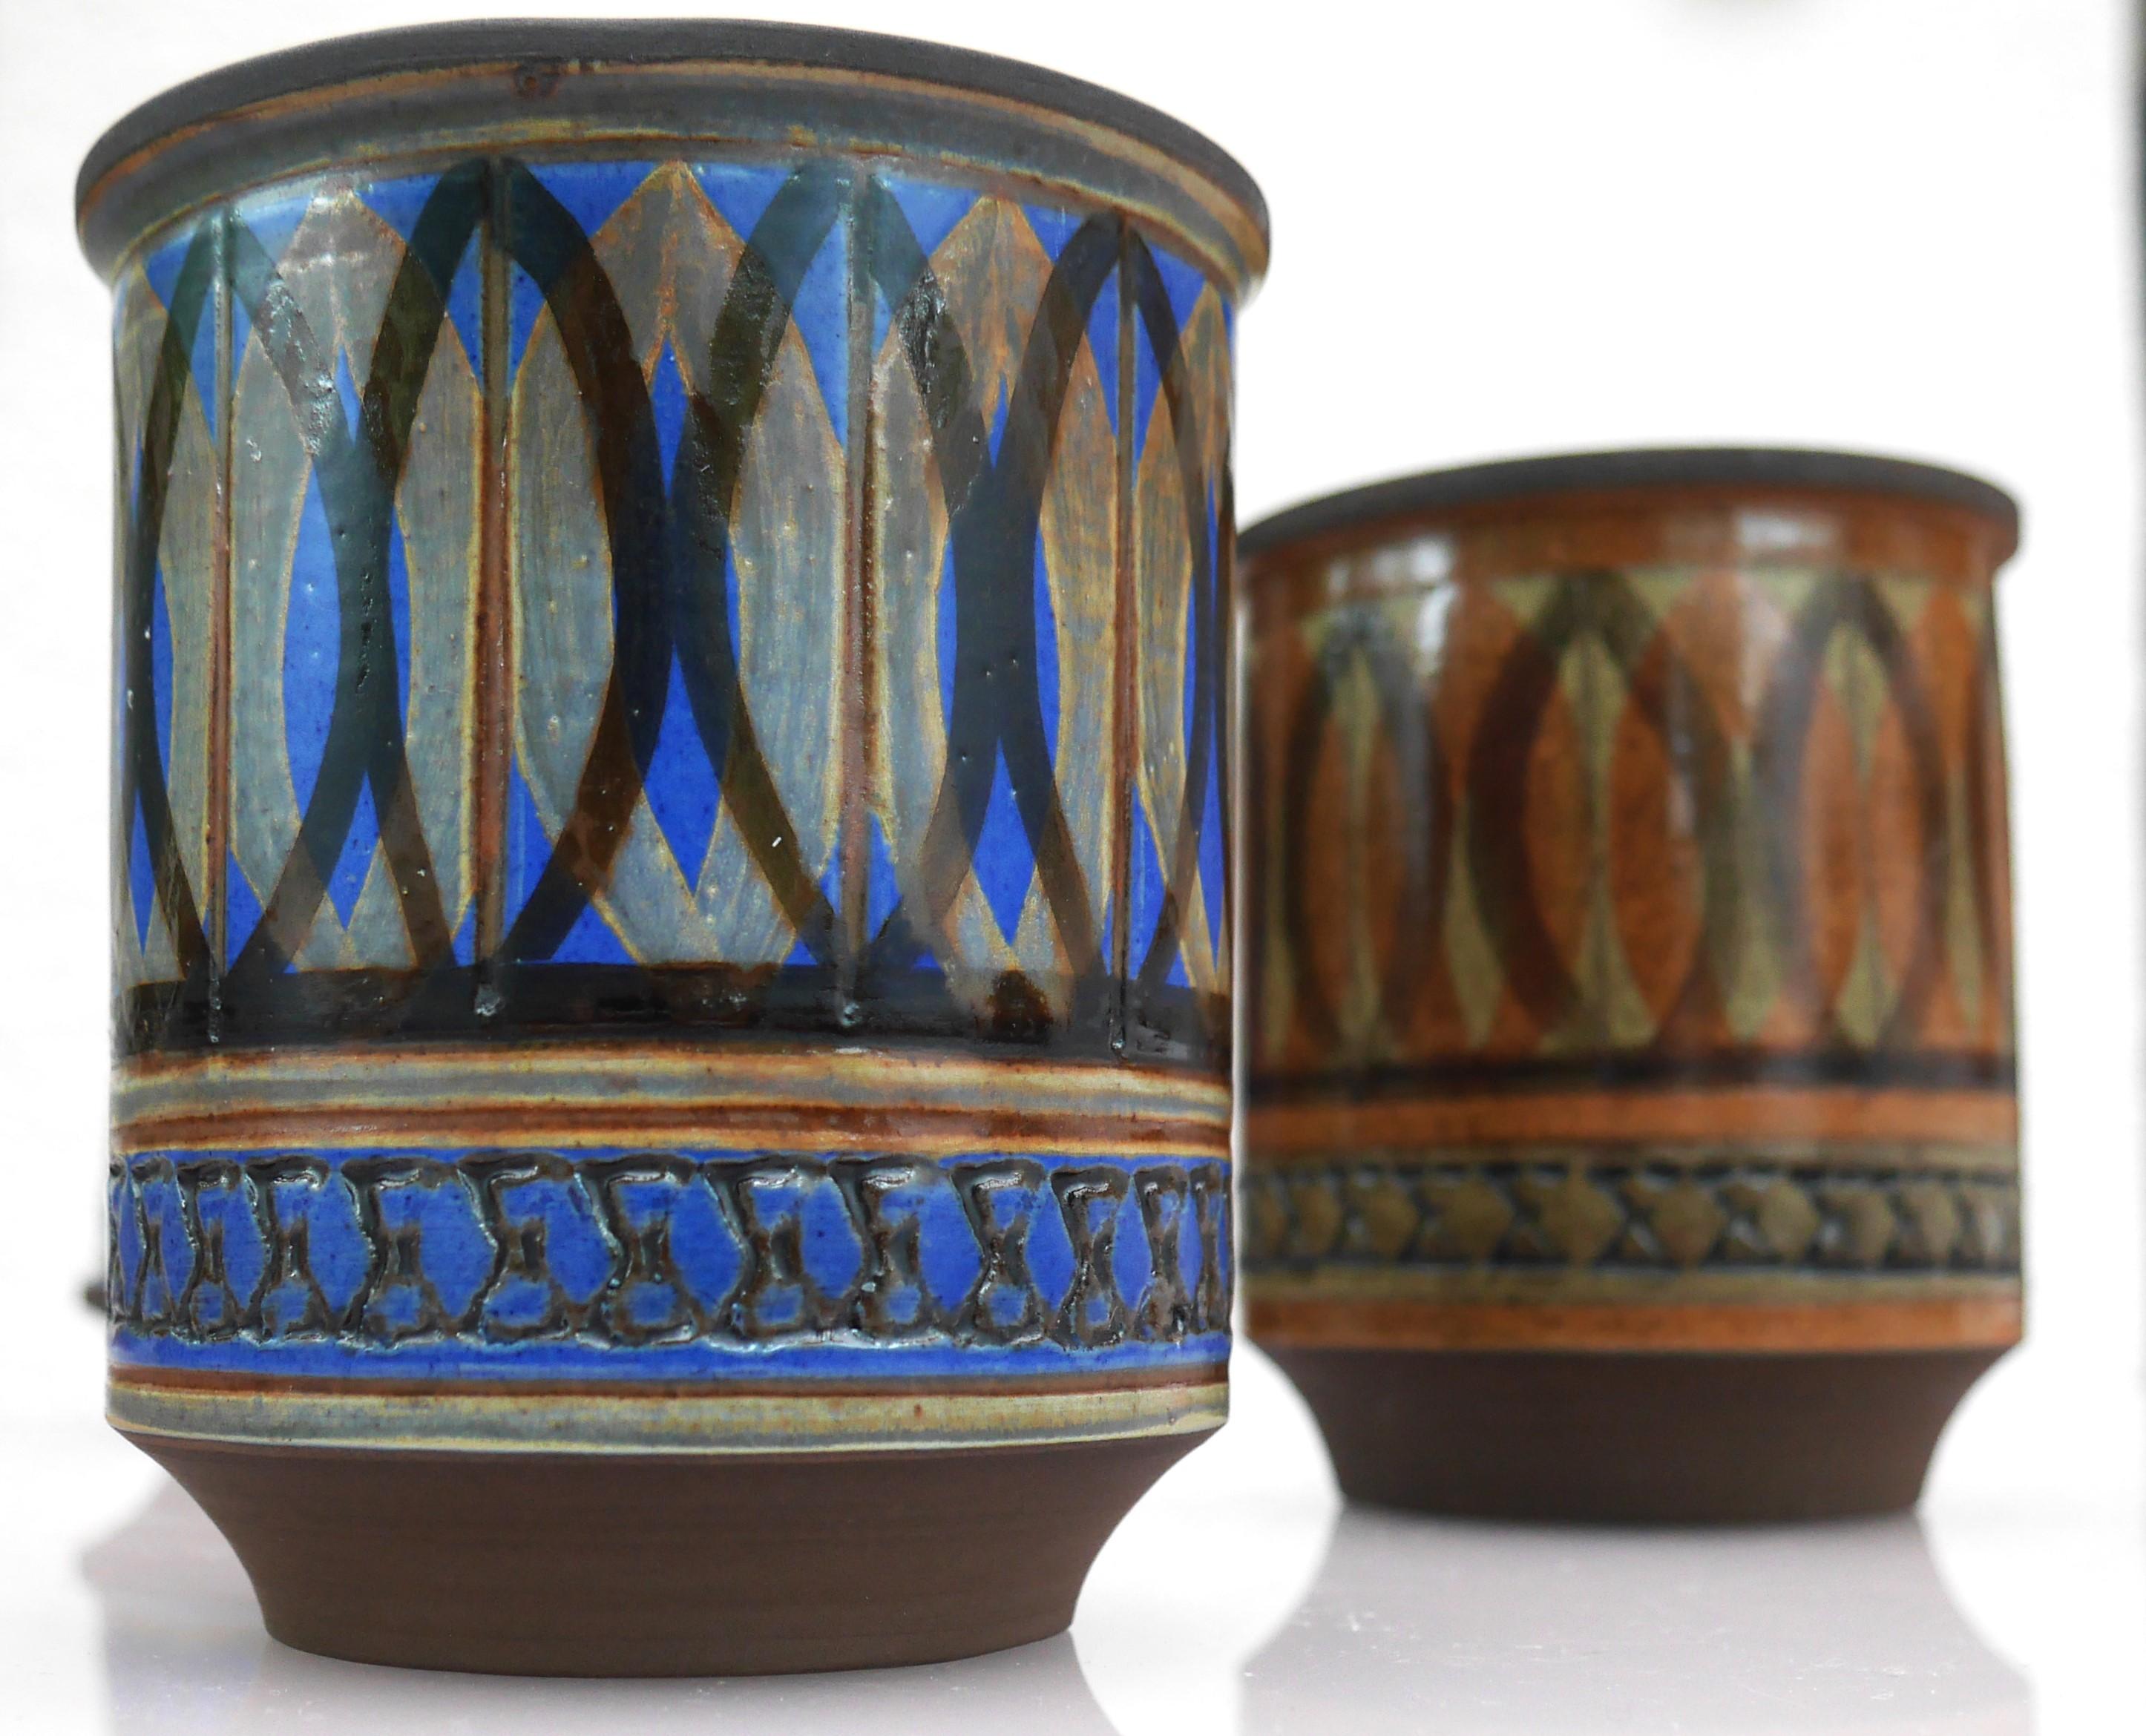 Ein Paar fantastische Vasen oder Blumentöpfe aus Steinzeug von Alingsås keramik, Schweden. Sie sind von Ullah Winbladh handgefertigt und von ihr signiert. Die Schablone und die Glasur sind einfach erstaunlich und so typisch für ihre Arbeit. Die